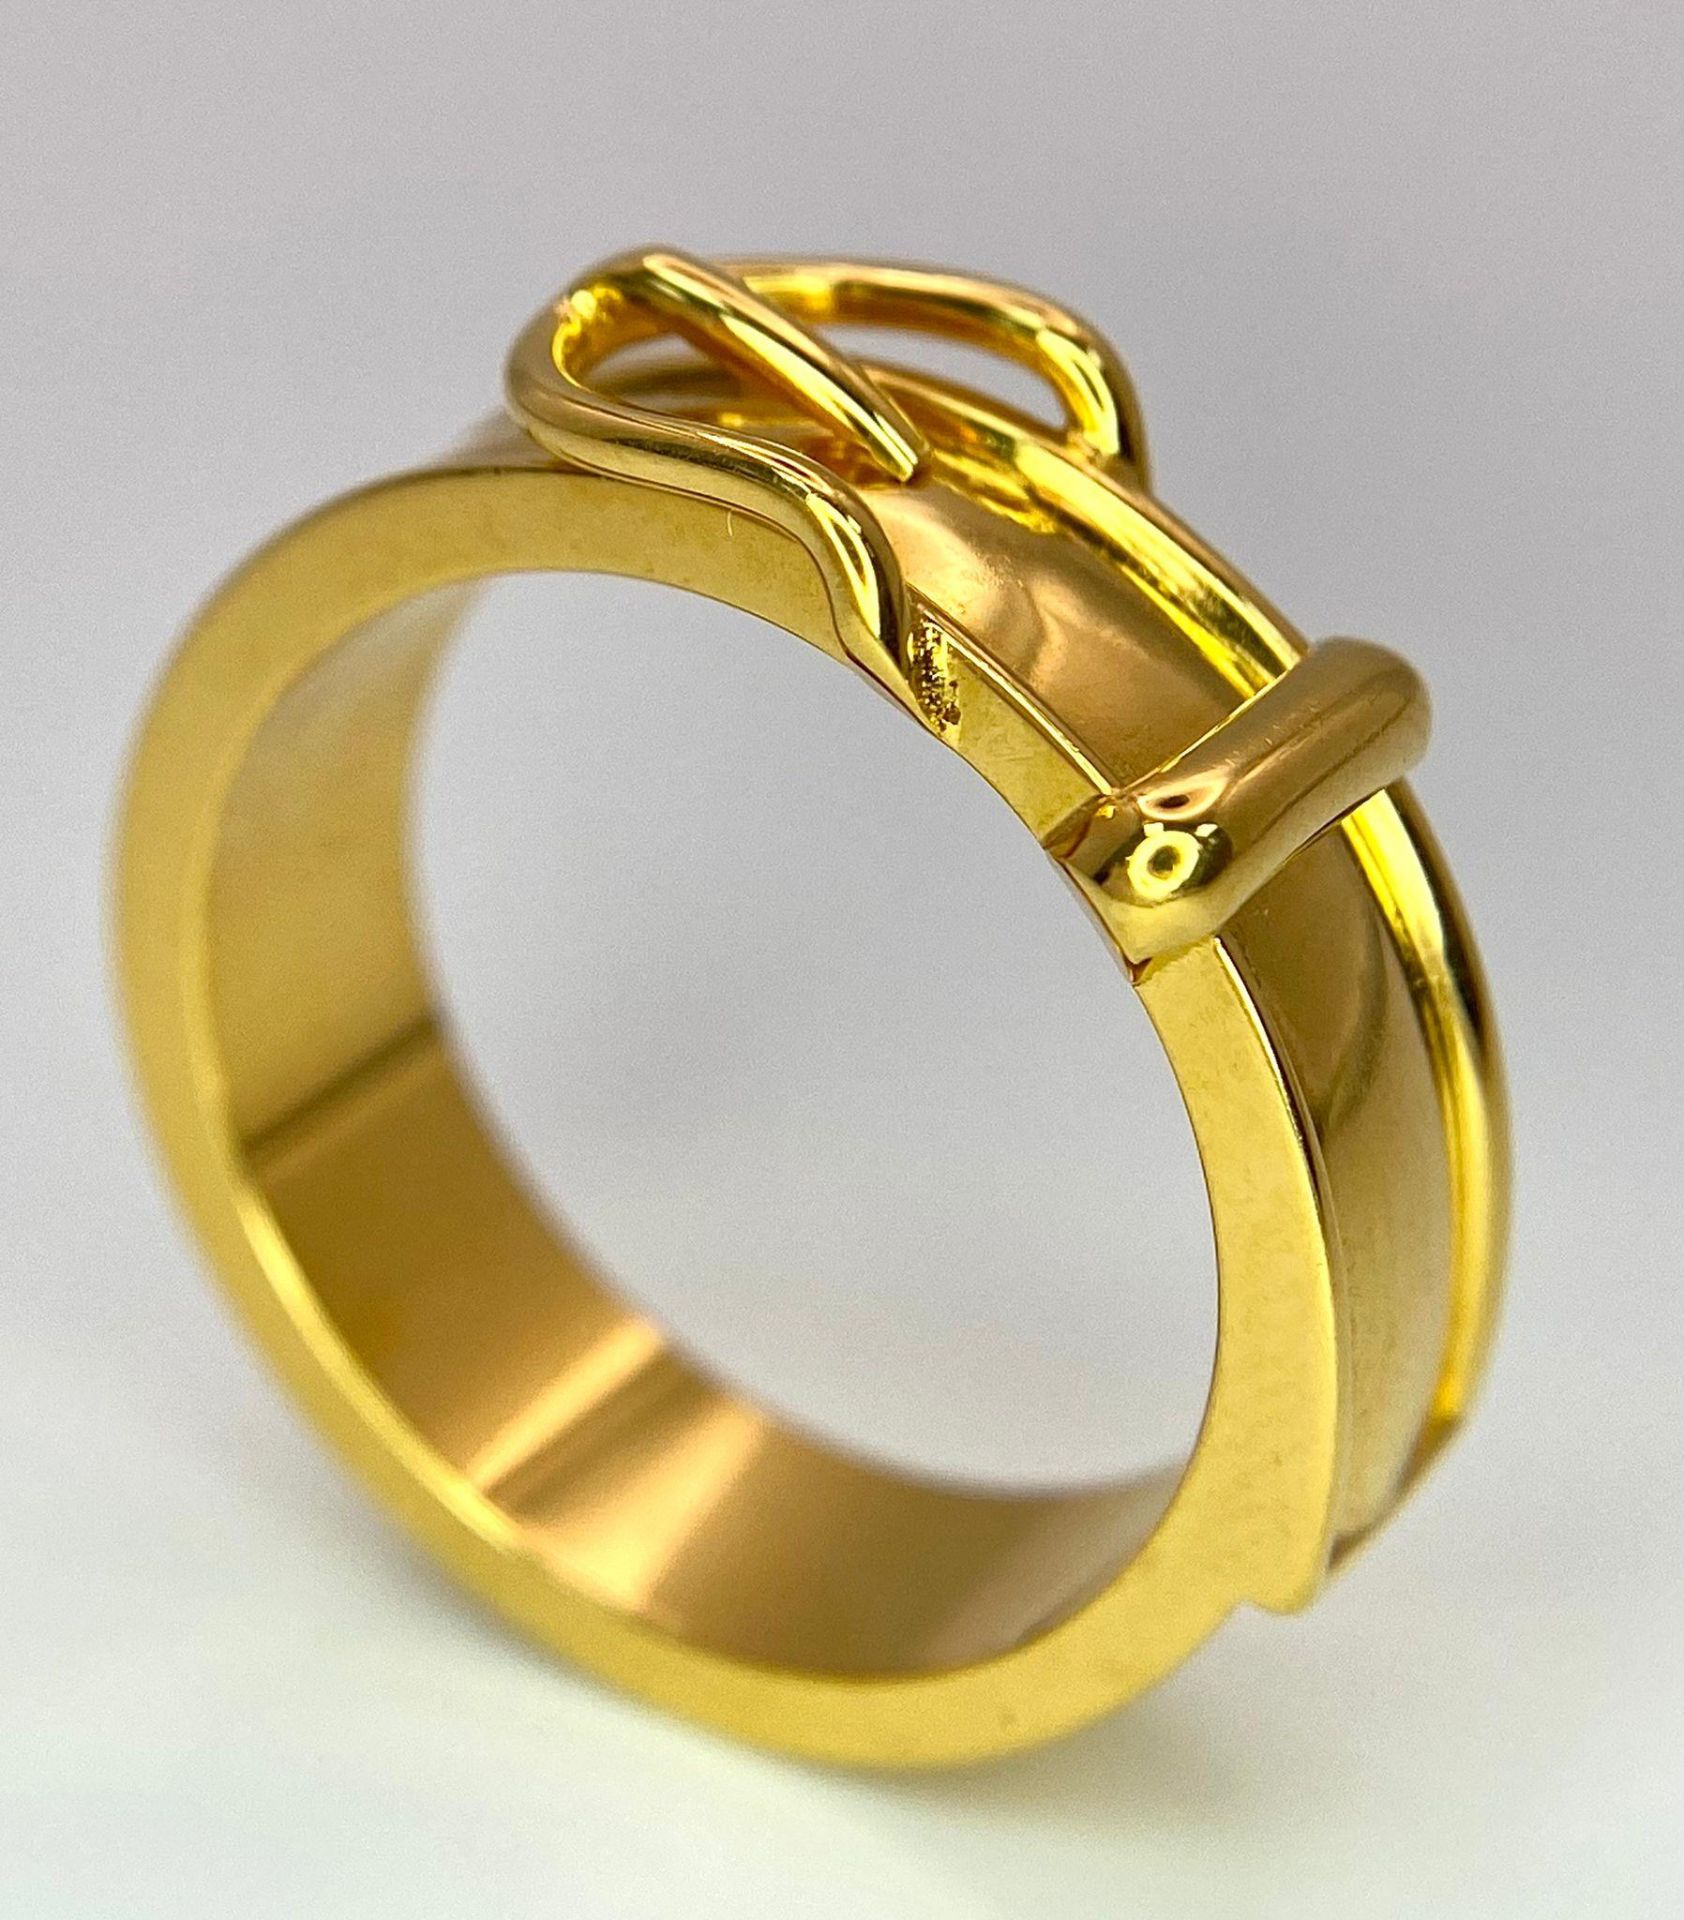 A Gold Plated Hermes Designer Belt Buckle Ring. Size S. - Image 4 of 8